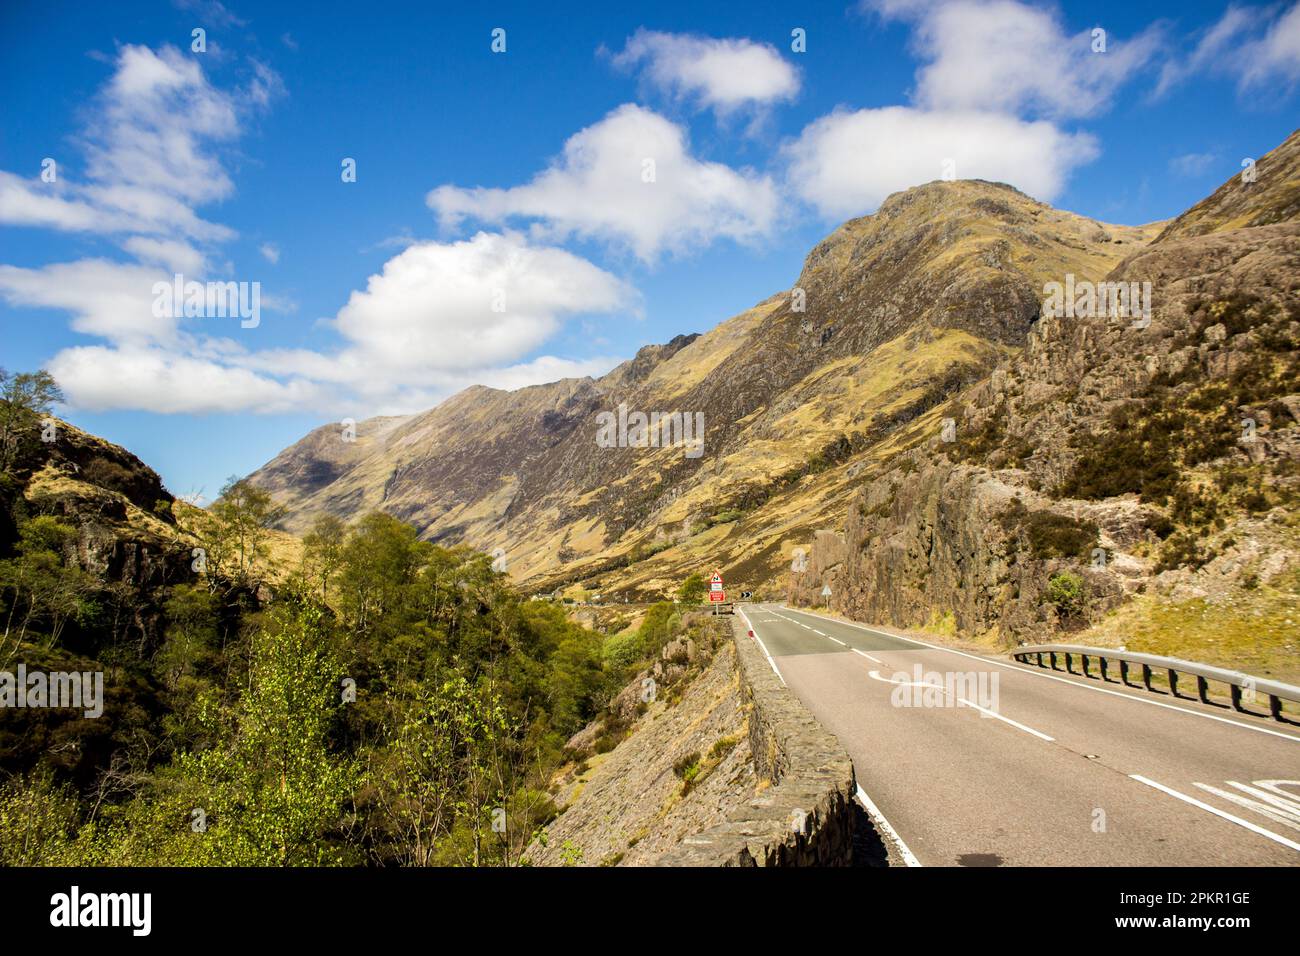 Strada che attraversa la Glen Coe Valley con le aspre montagne Grampian che si innalzano accanto ad essa Foto Stock